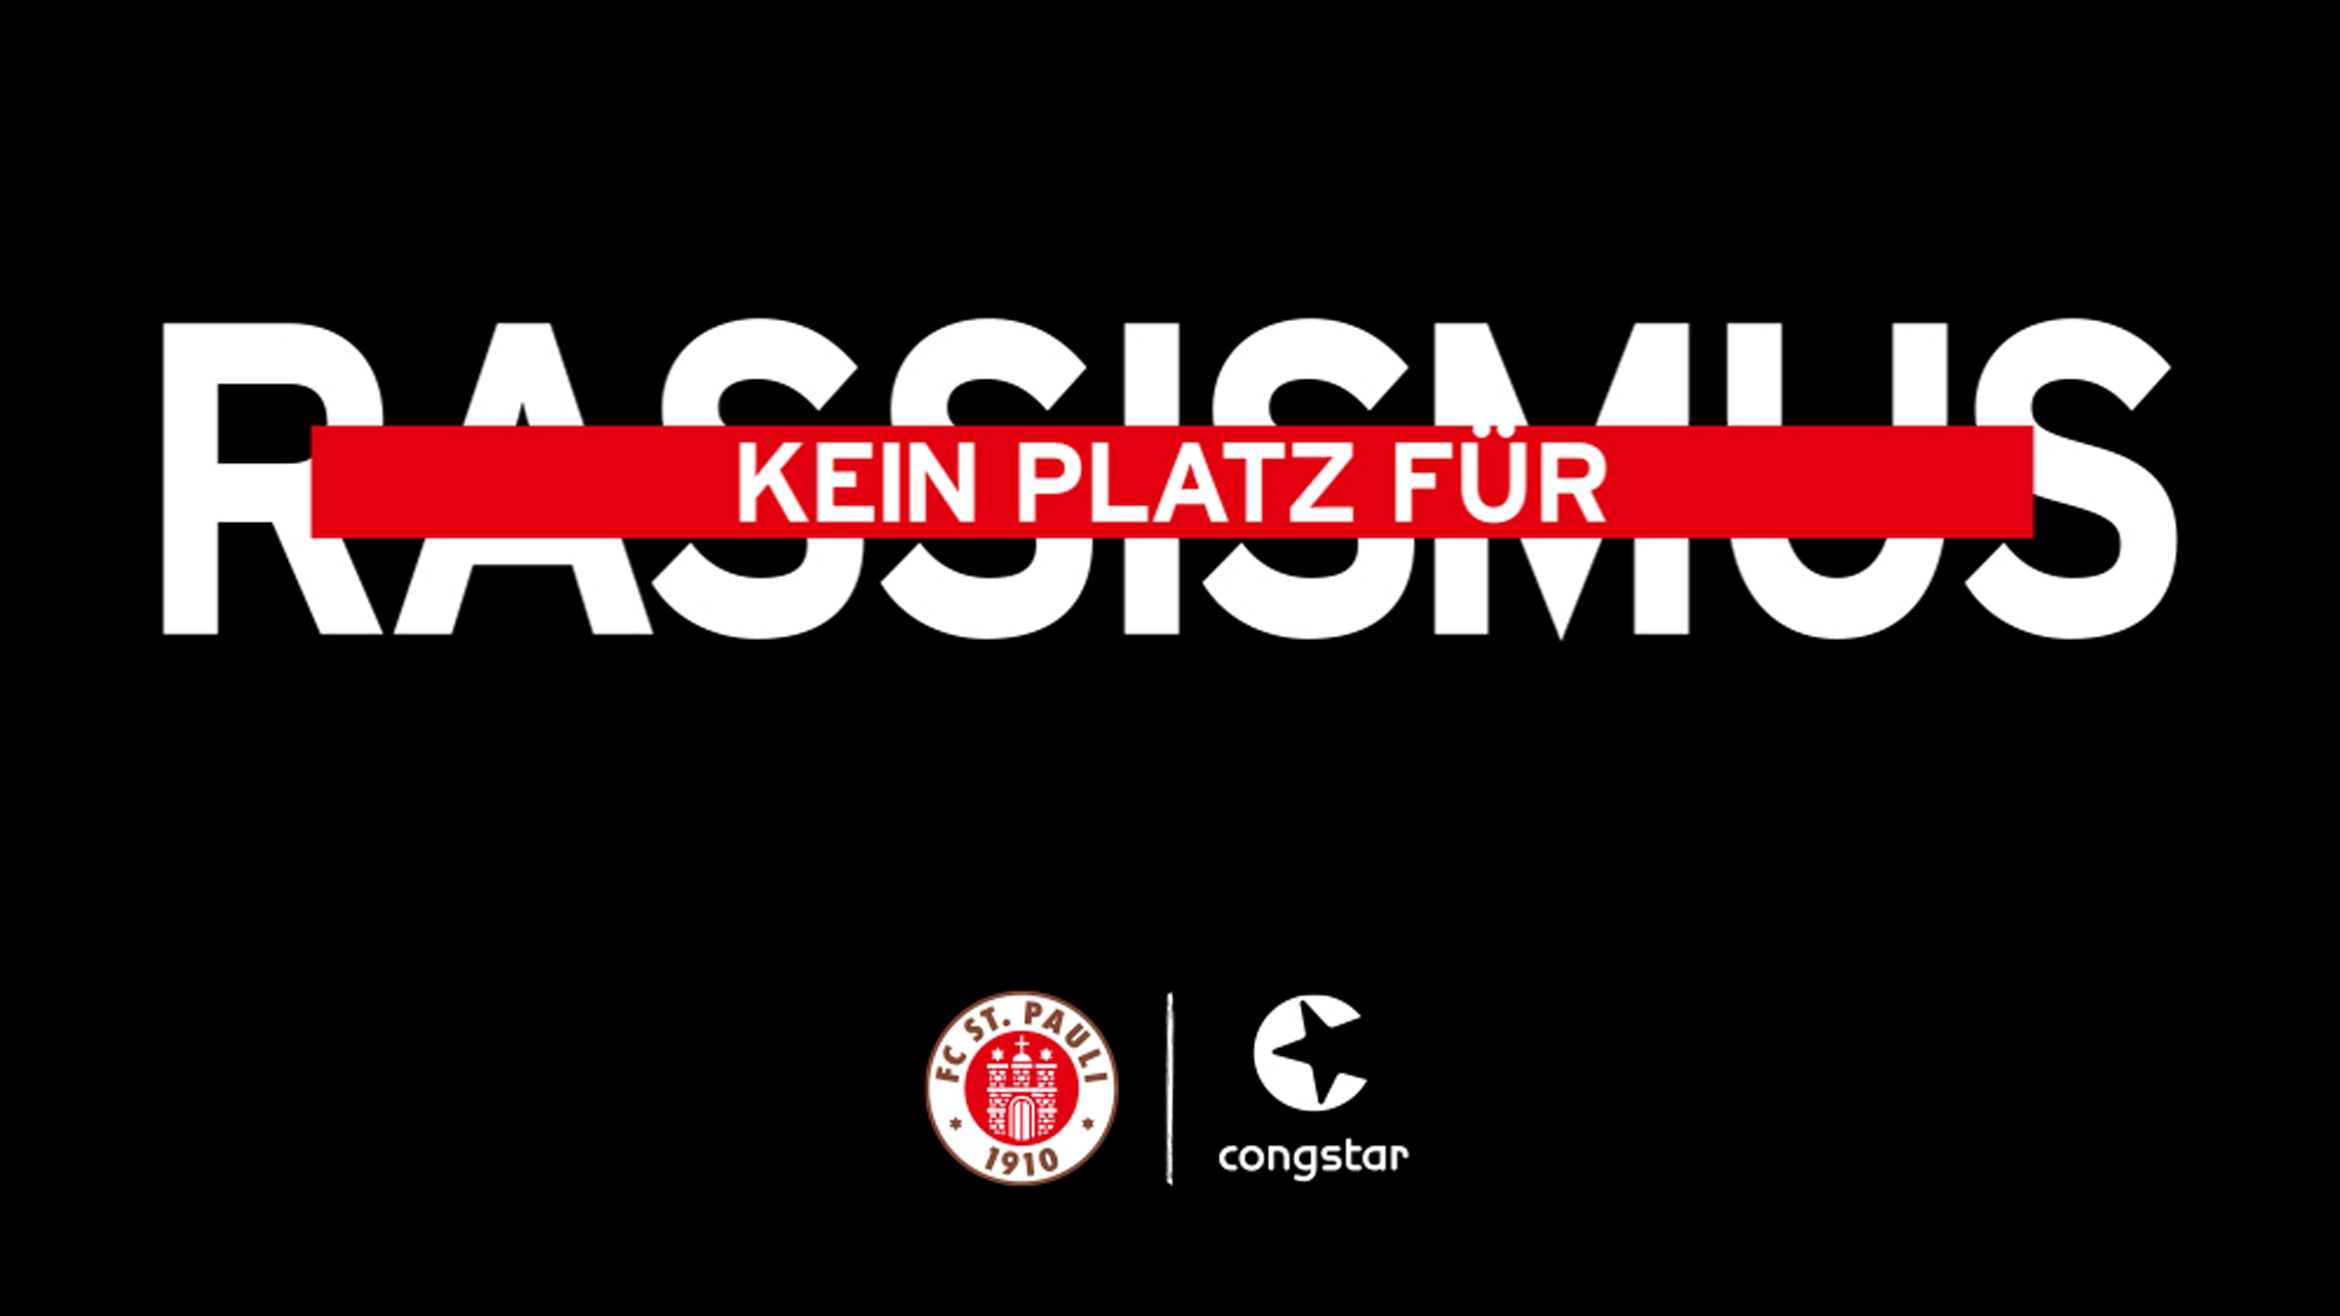 Der FC St. Pauli und Congstar engagieren sich im Kampf gegen Rassismus und Ausgrenzung –